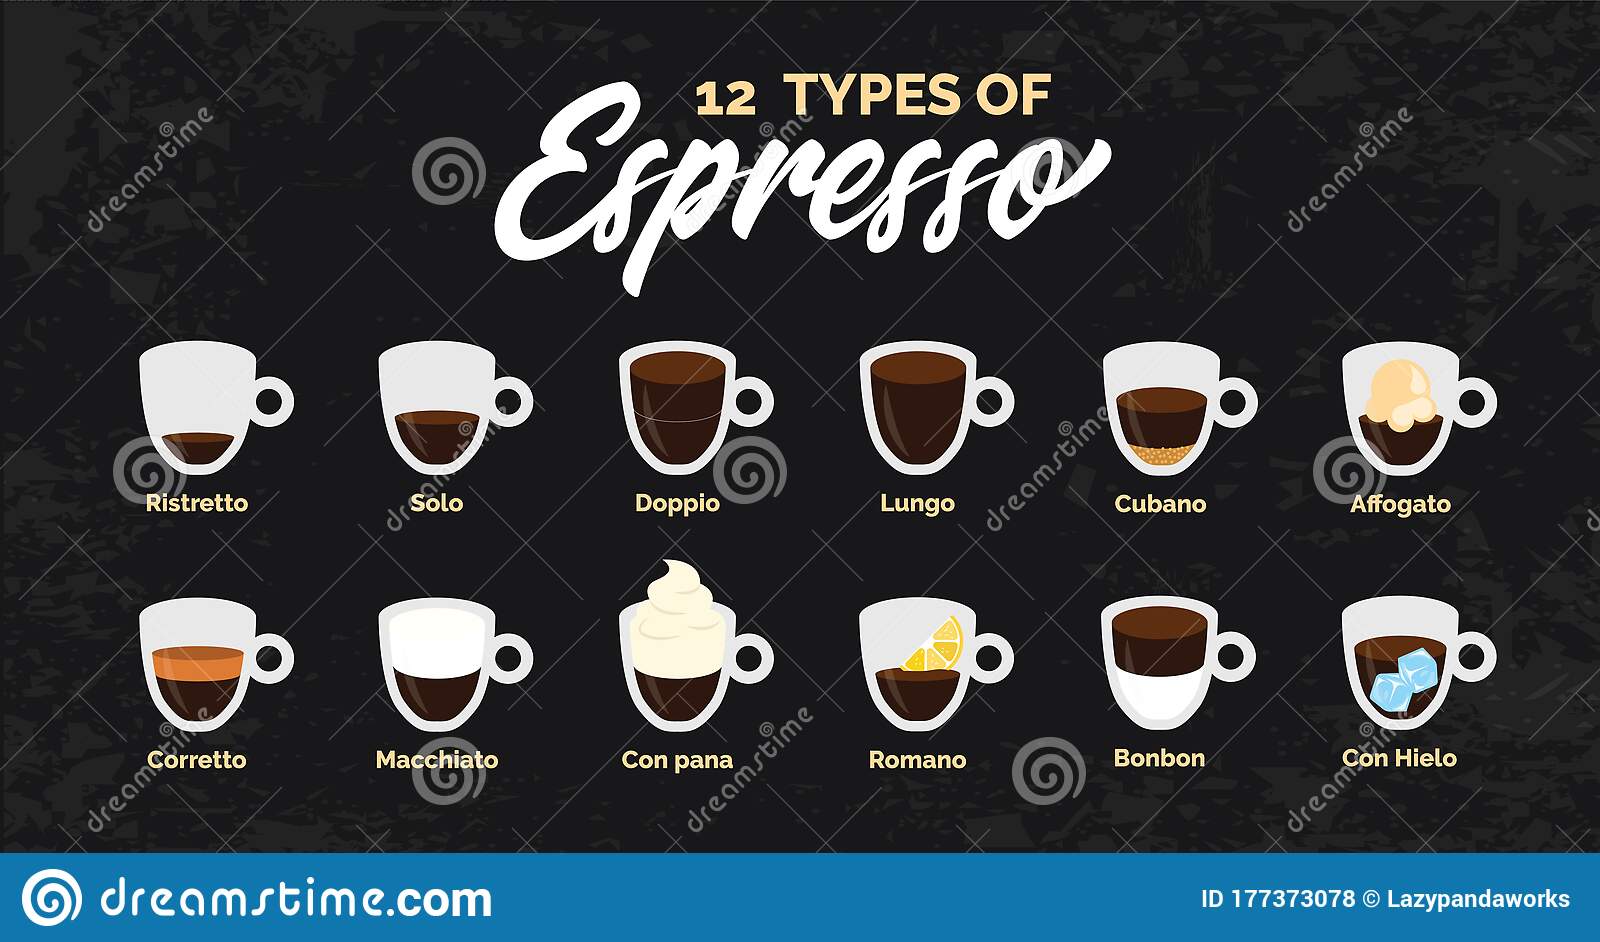 Латте, капучино, эспрессо, американо: разница и отличия от обычного кофе